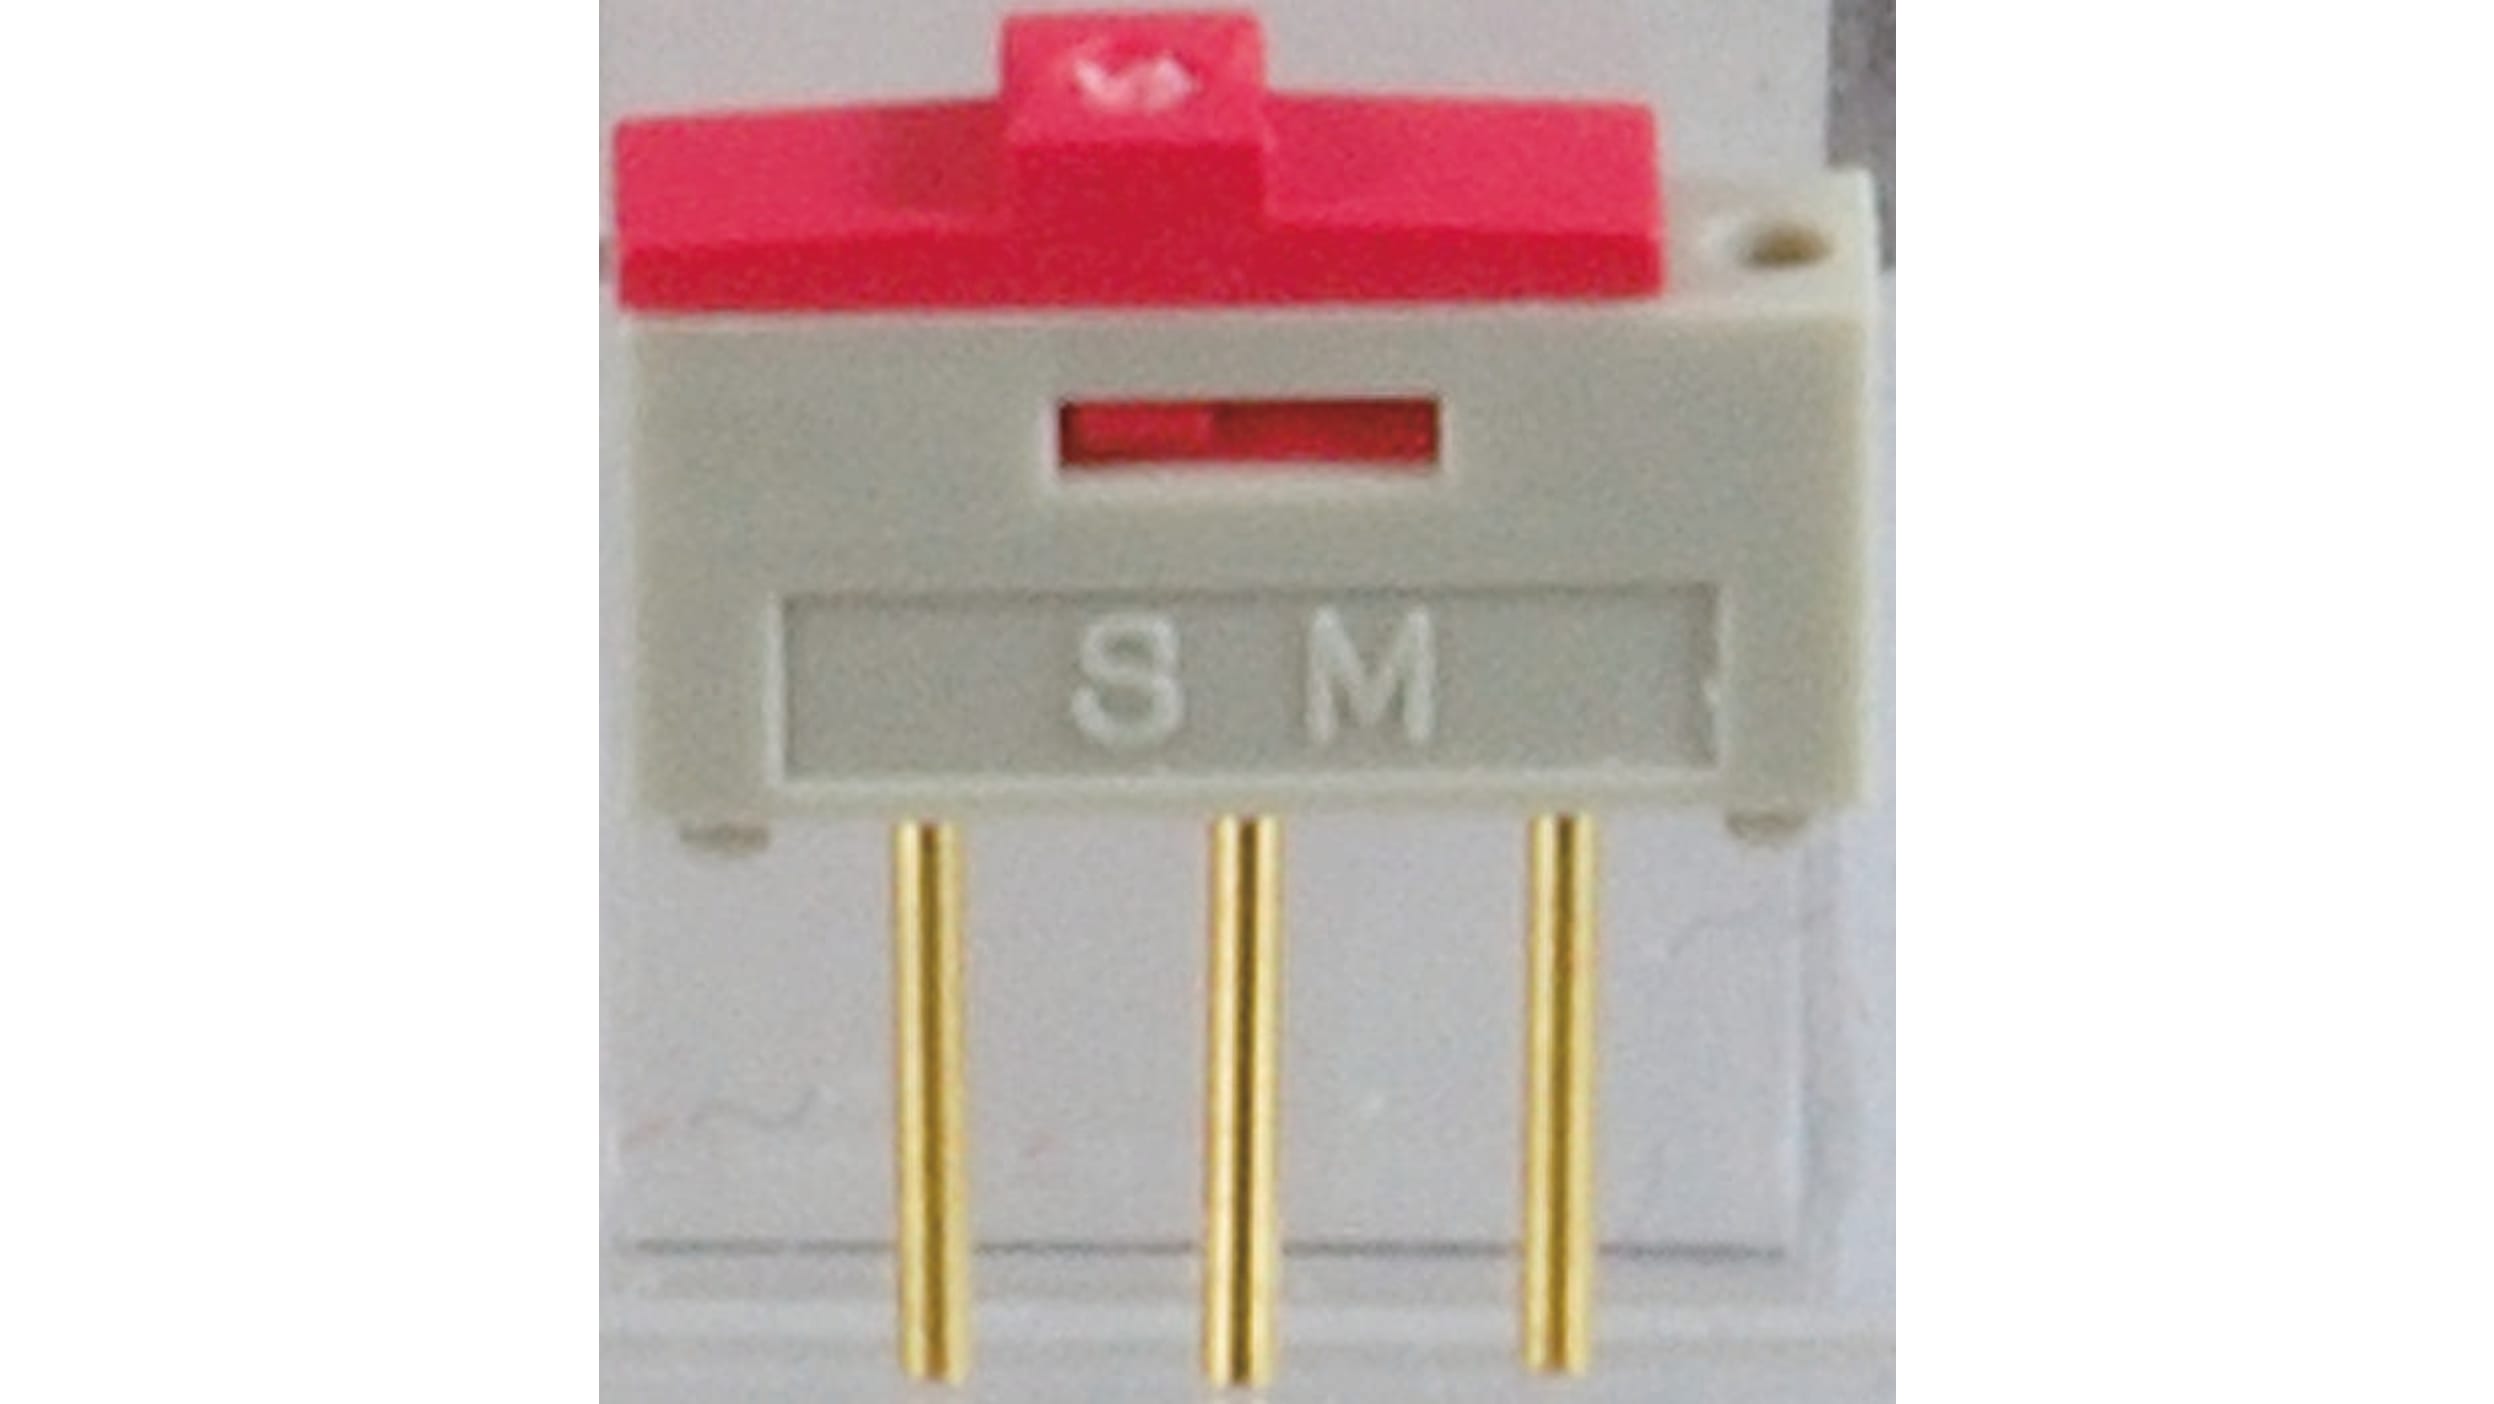 SM-03201-02 | NKK Switches スライドスイッチ 1回路 2接点 500 mA 